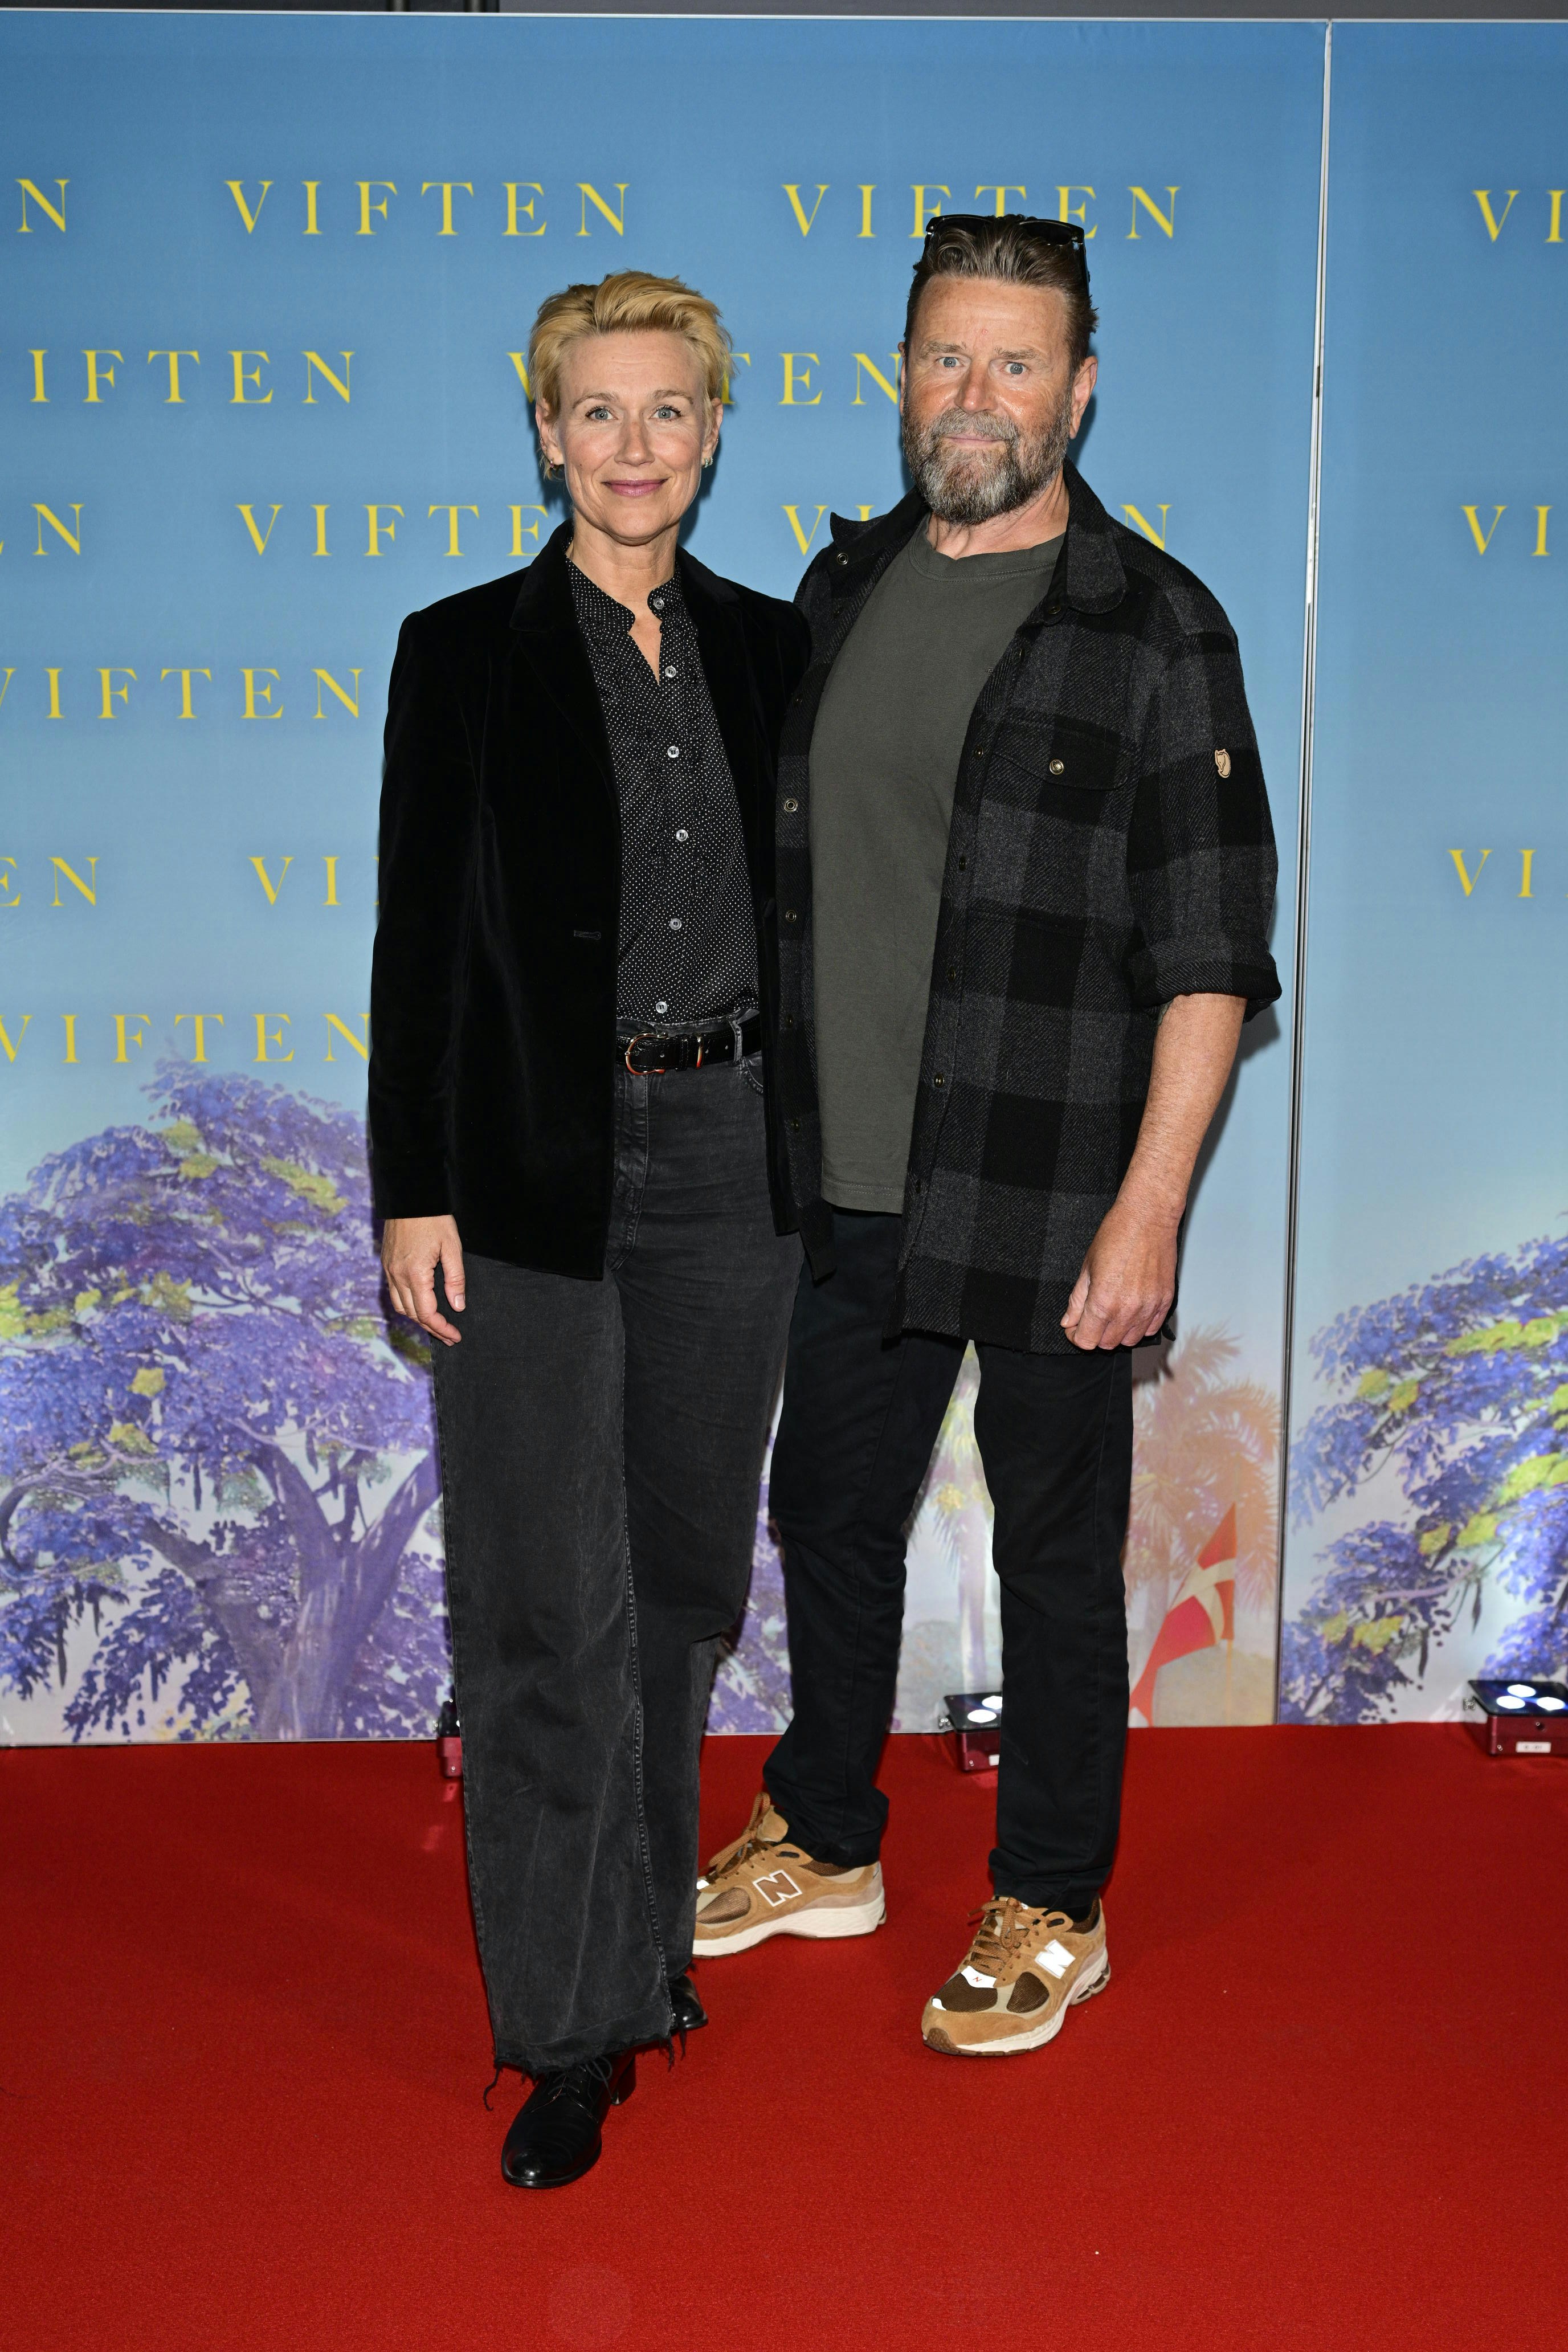 Skuespillerparret Xenia Lach-Nielsen og Peter Gantzler starter ugen med en tur i biffen i anledning af premieren på "Viften", som Peter har en rolle i.&nbsp;
